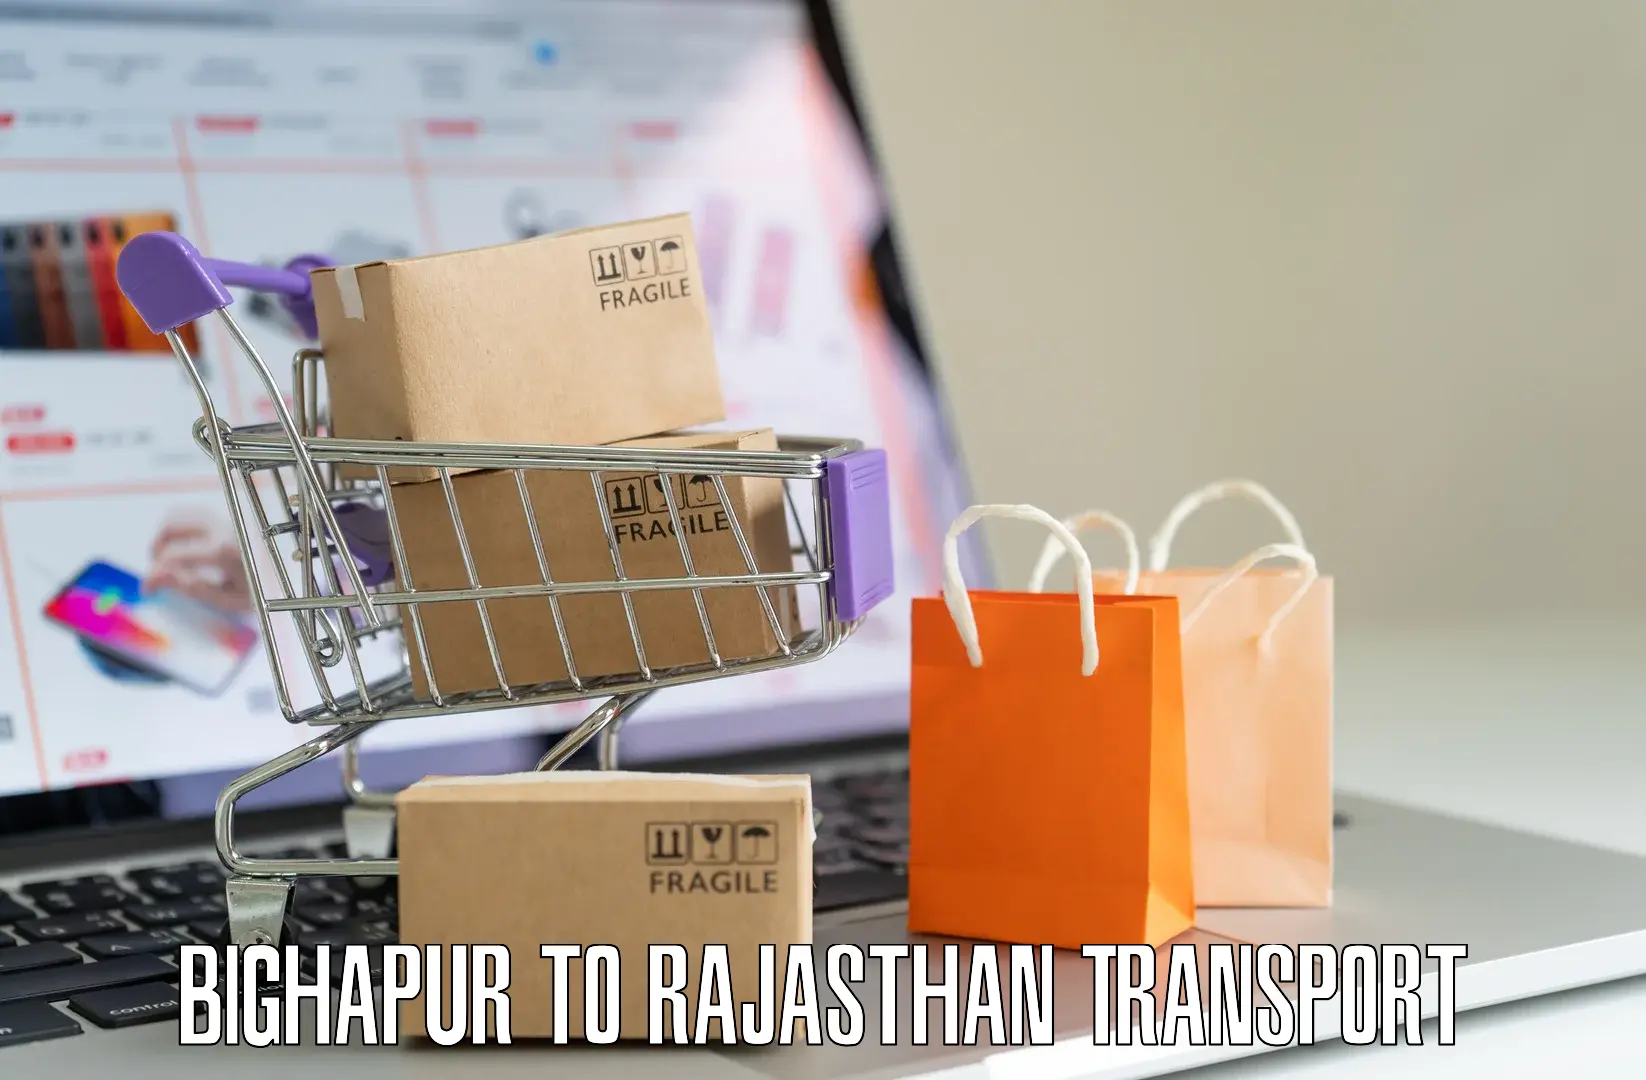 Furniture transport service Bighapur to Mandalgarh